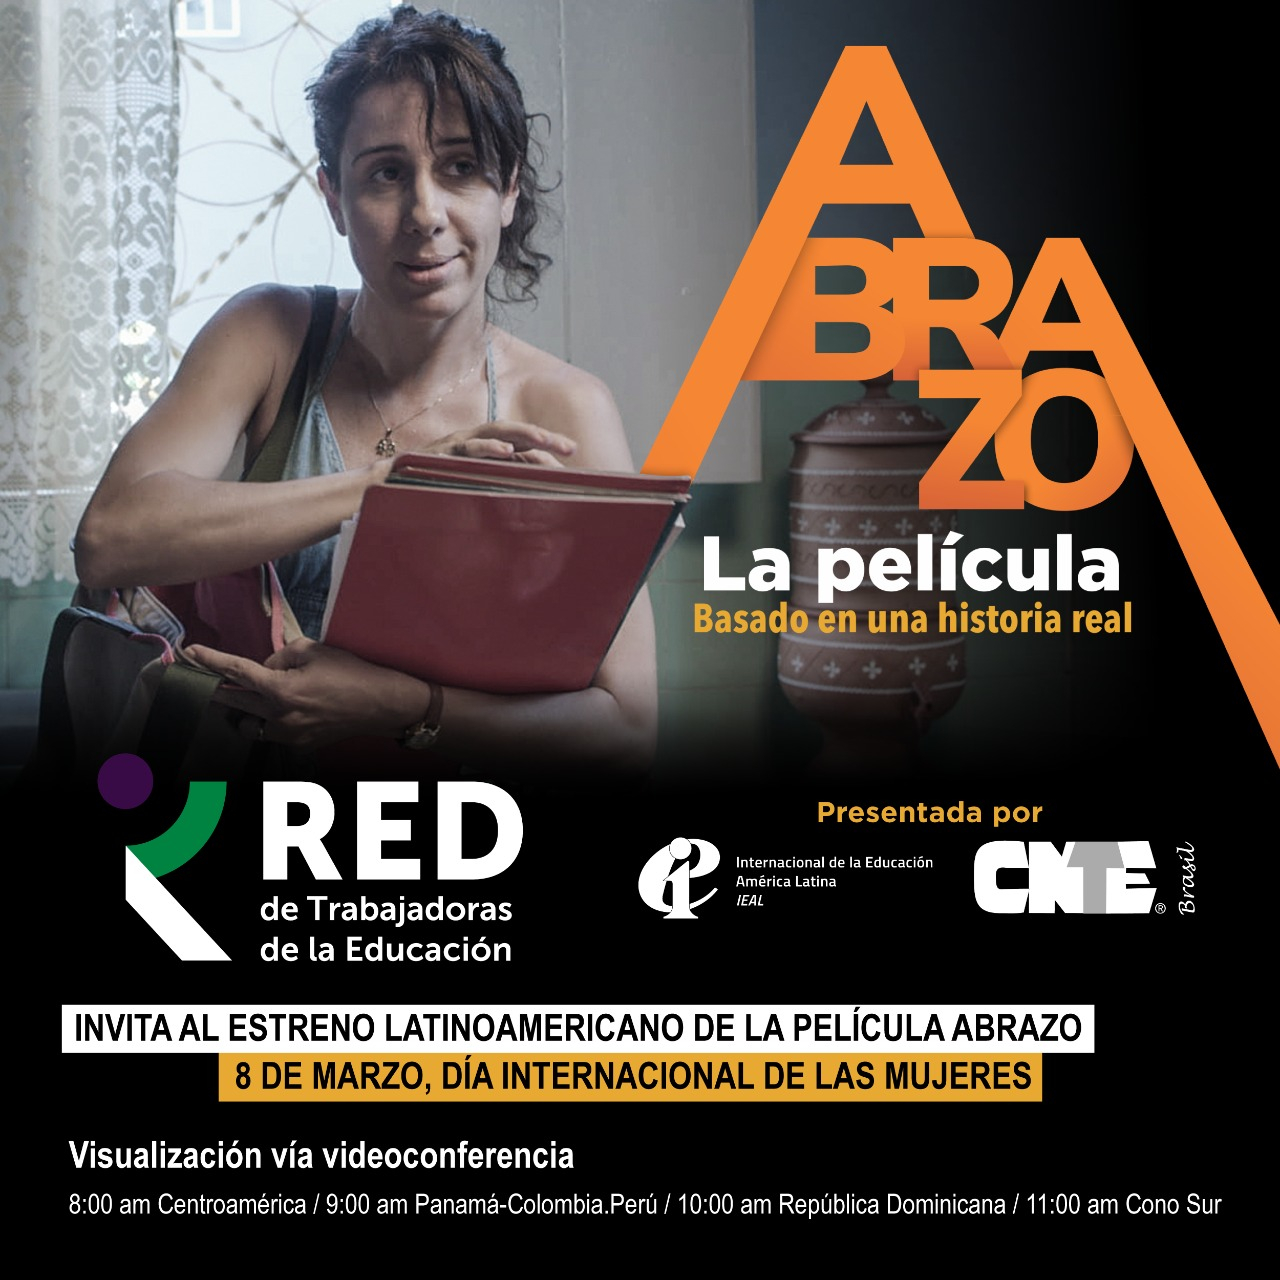 RED de Trabajadoras de la Educación de la IEAL invita a estreno internacional de la película brasileña Abrazo